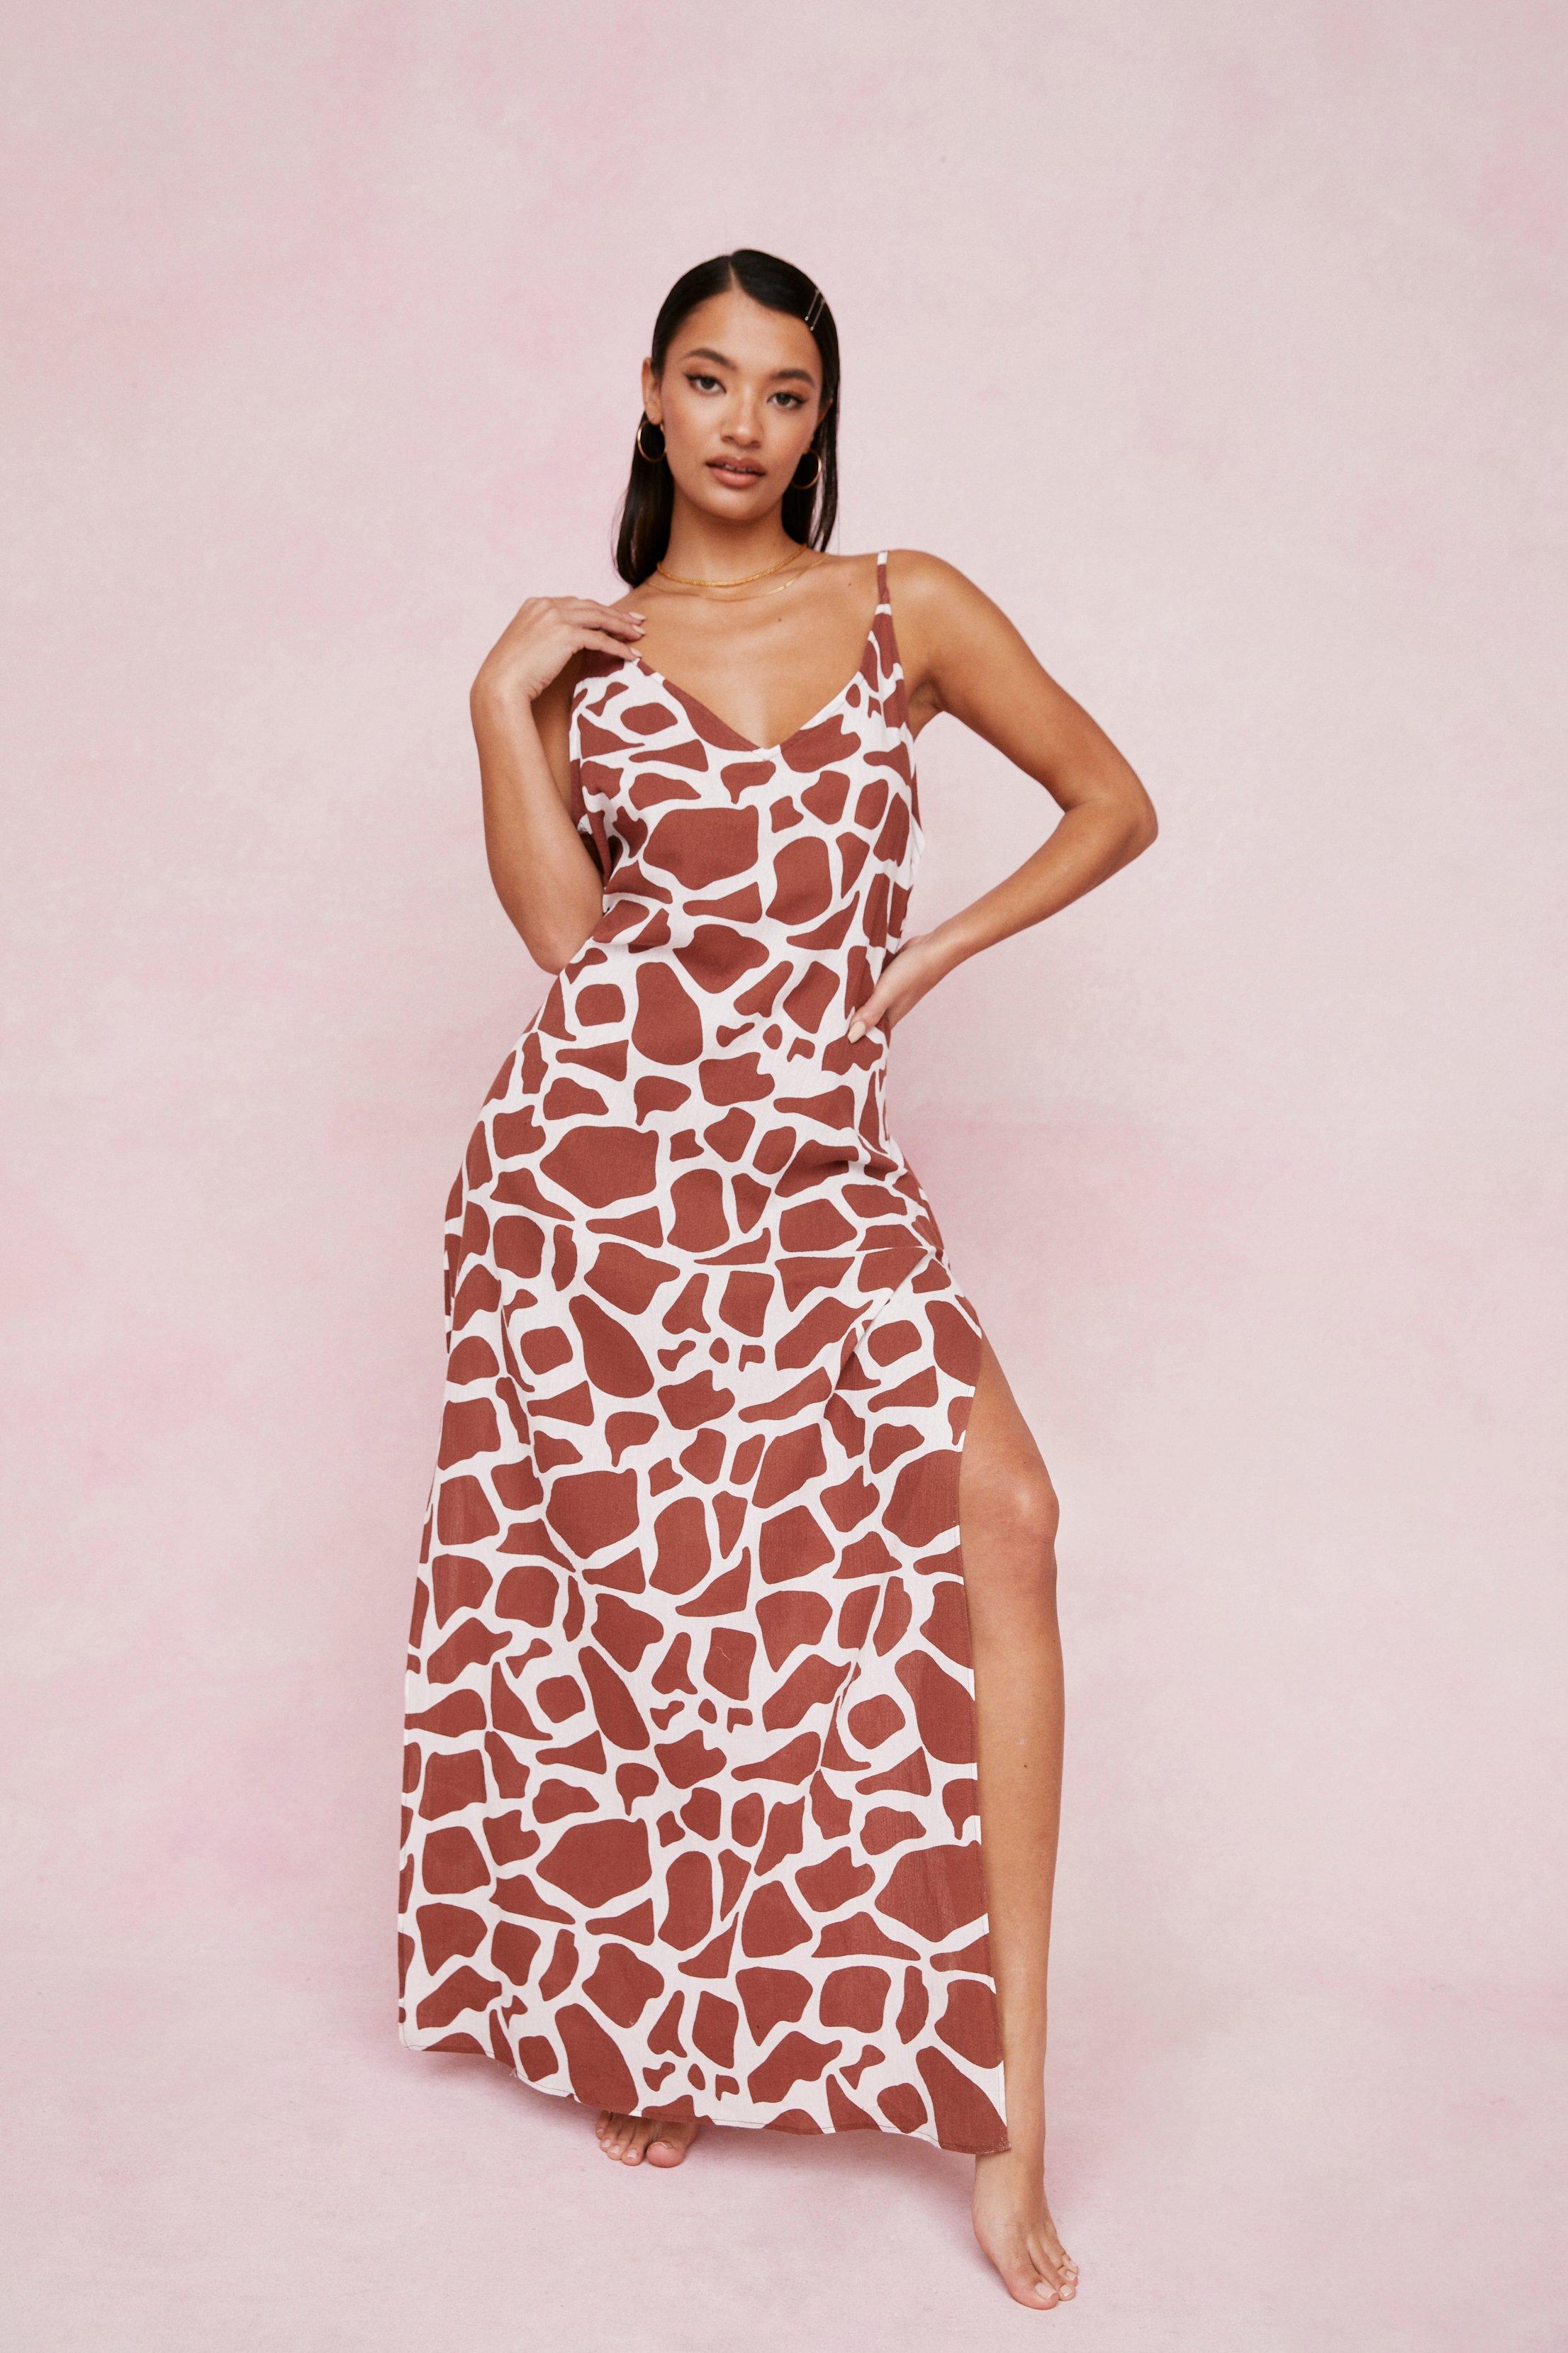 giraffe print dress